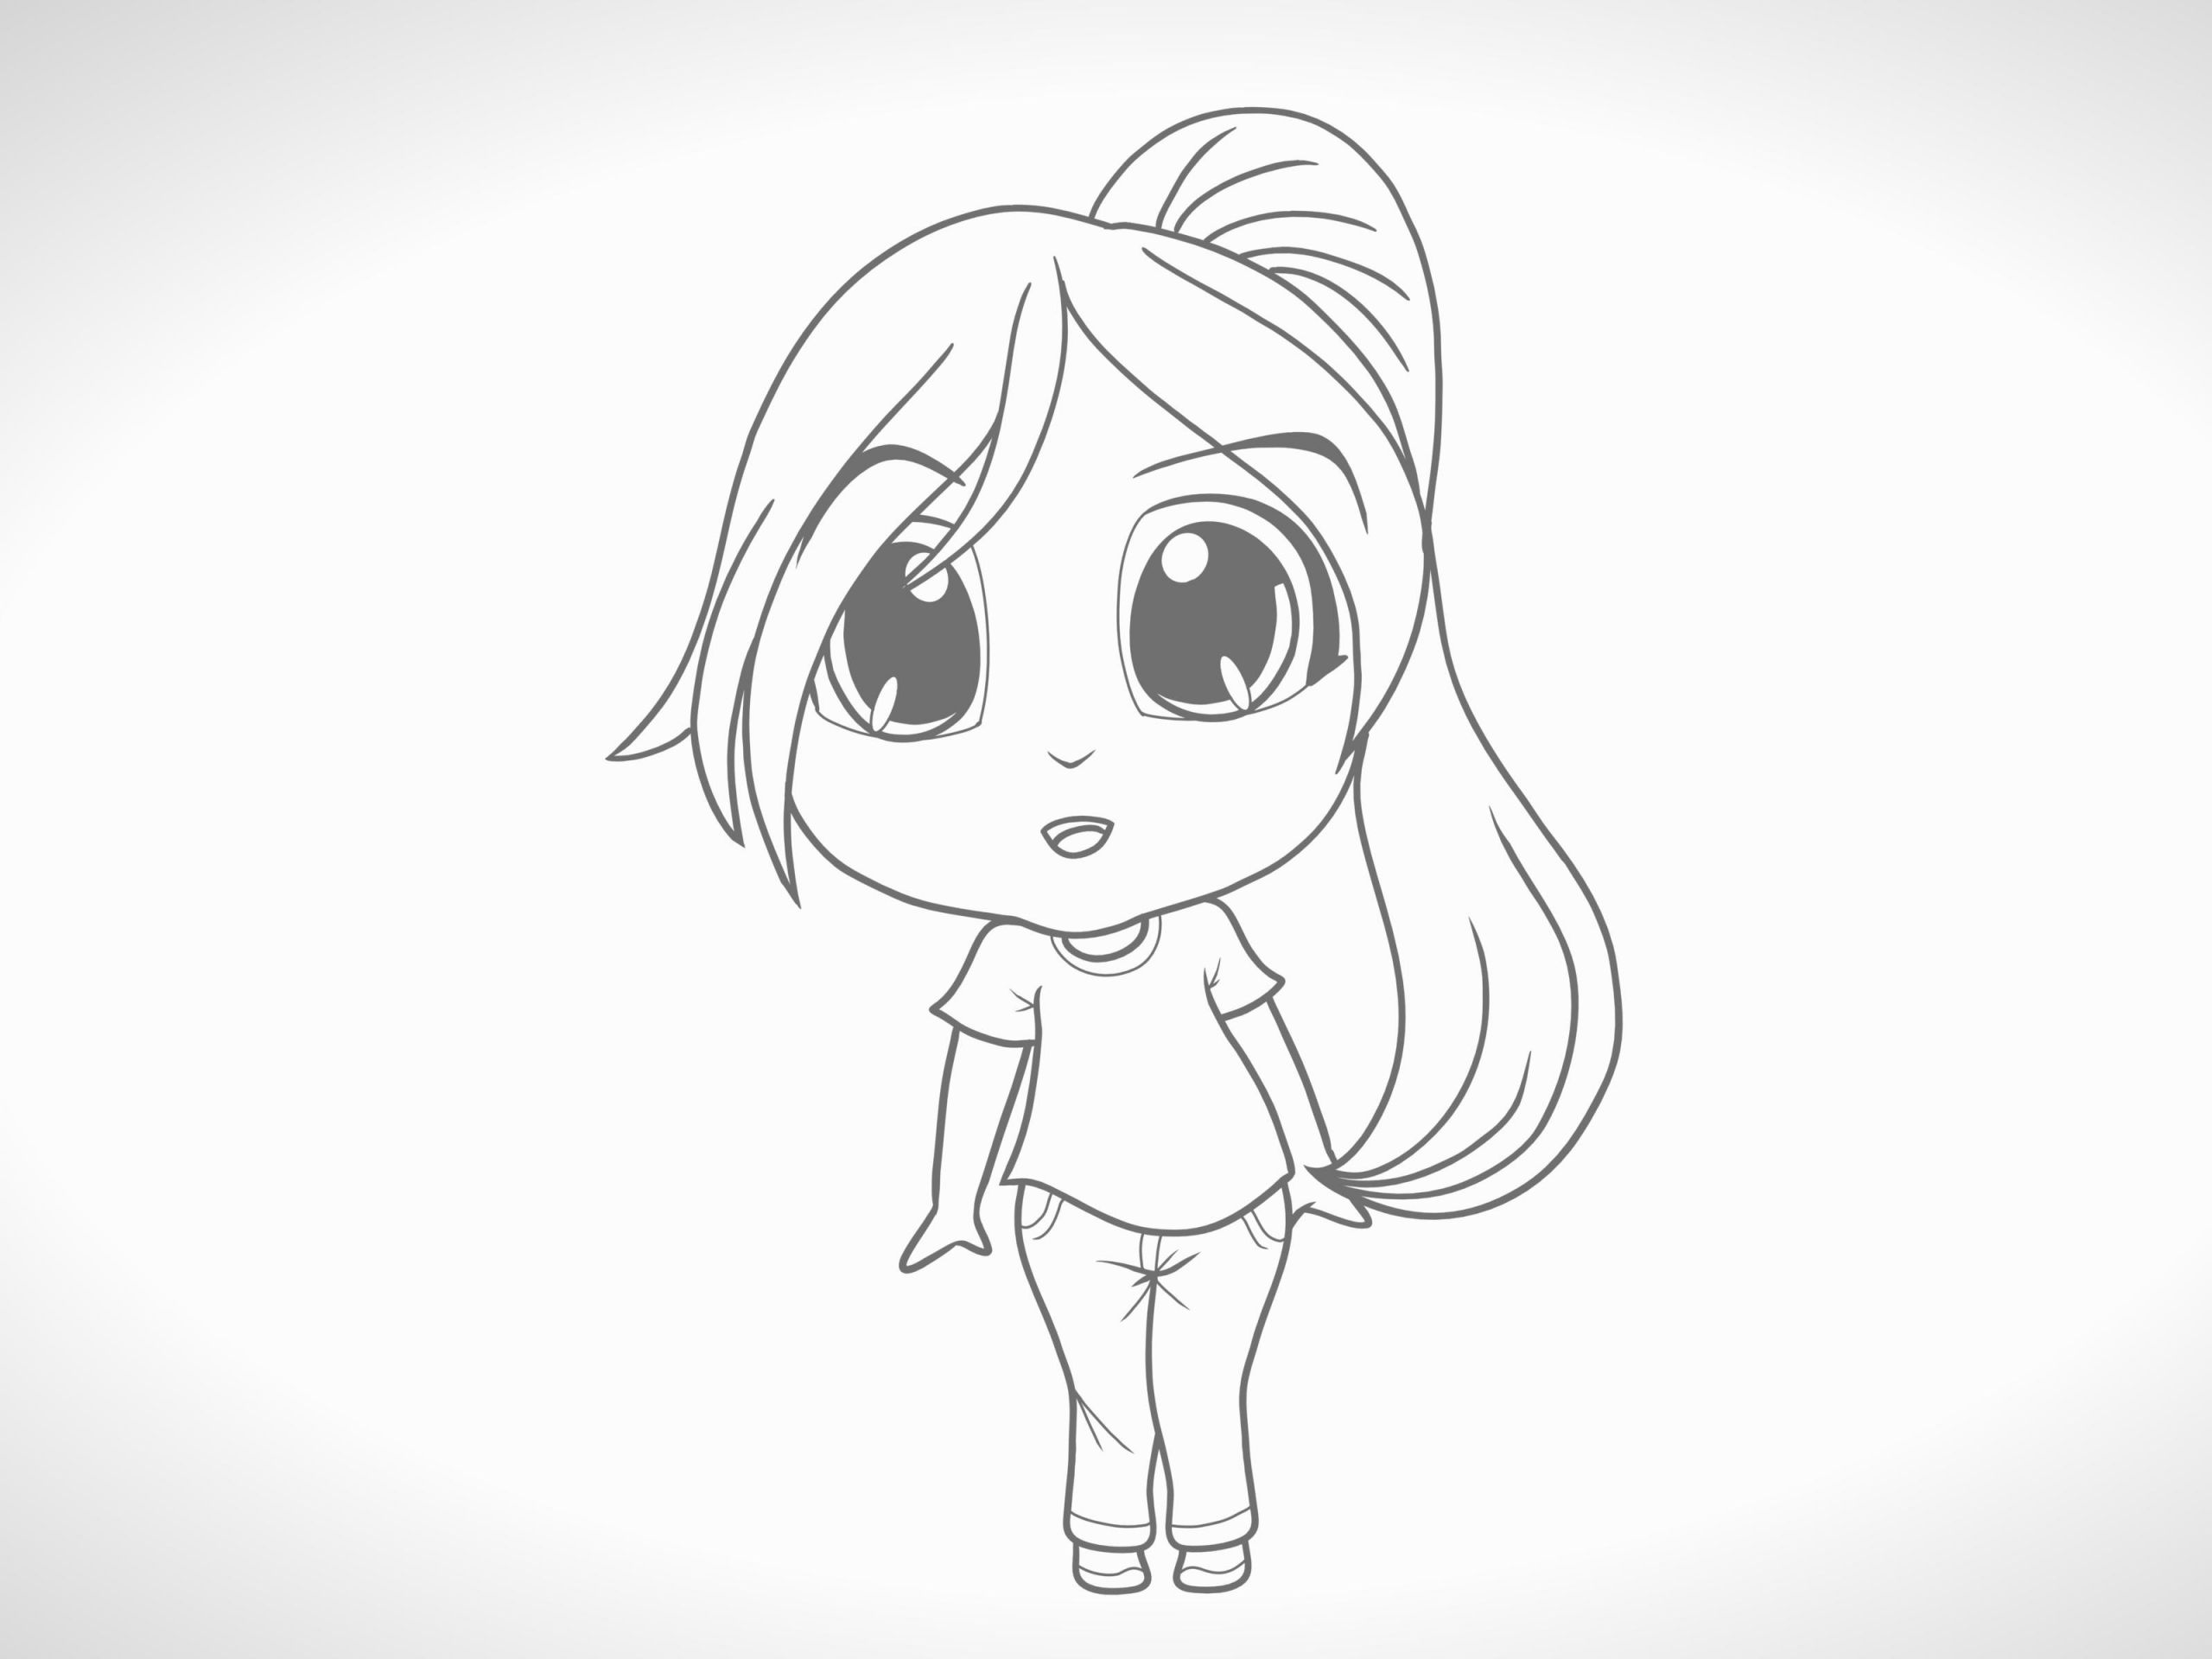 How to Draw Cartoon Anime Eine Chibi Figur Zeichnen 12 Schritte Mit Bildern Wikihow